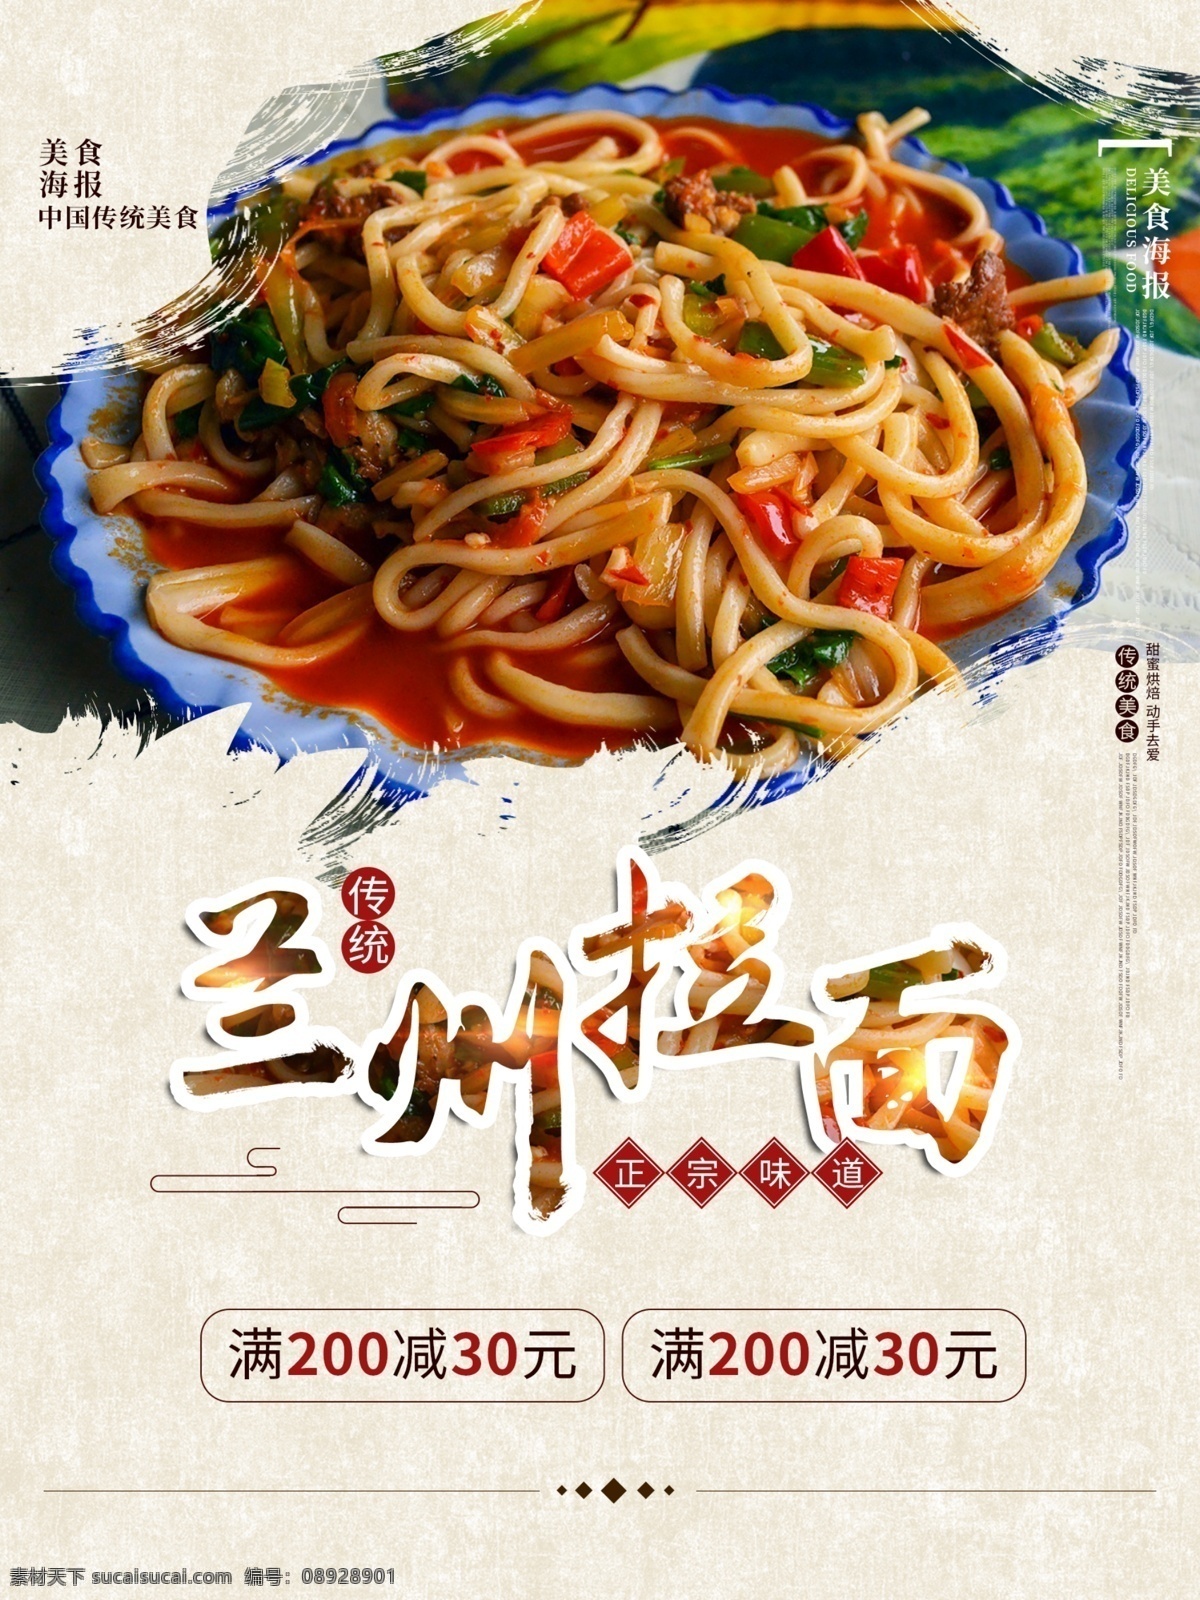 兰州拉面 正宗味道 美食海报 中国传统 优惠